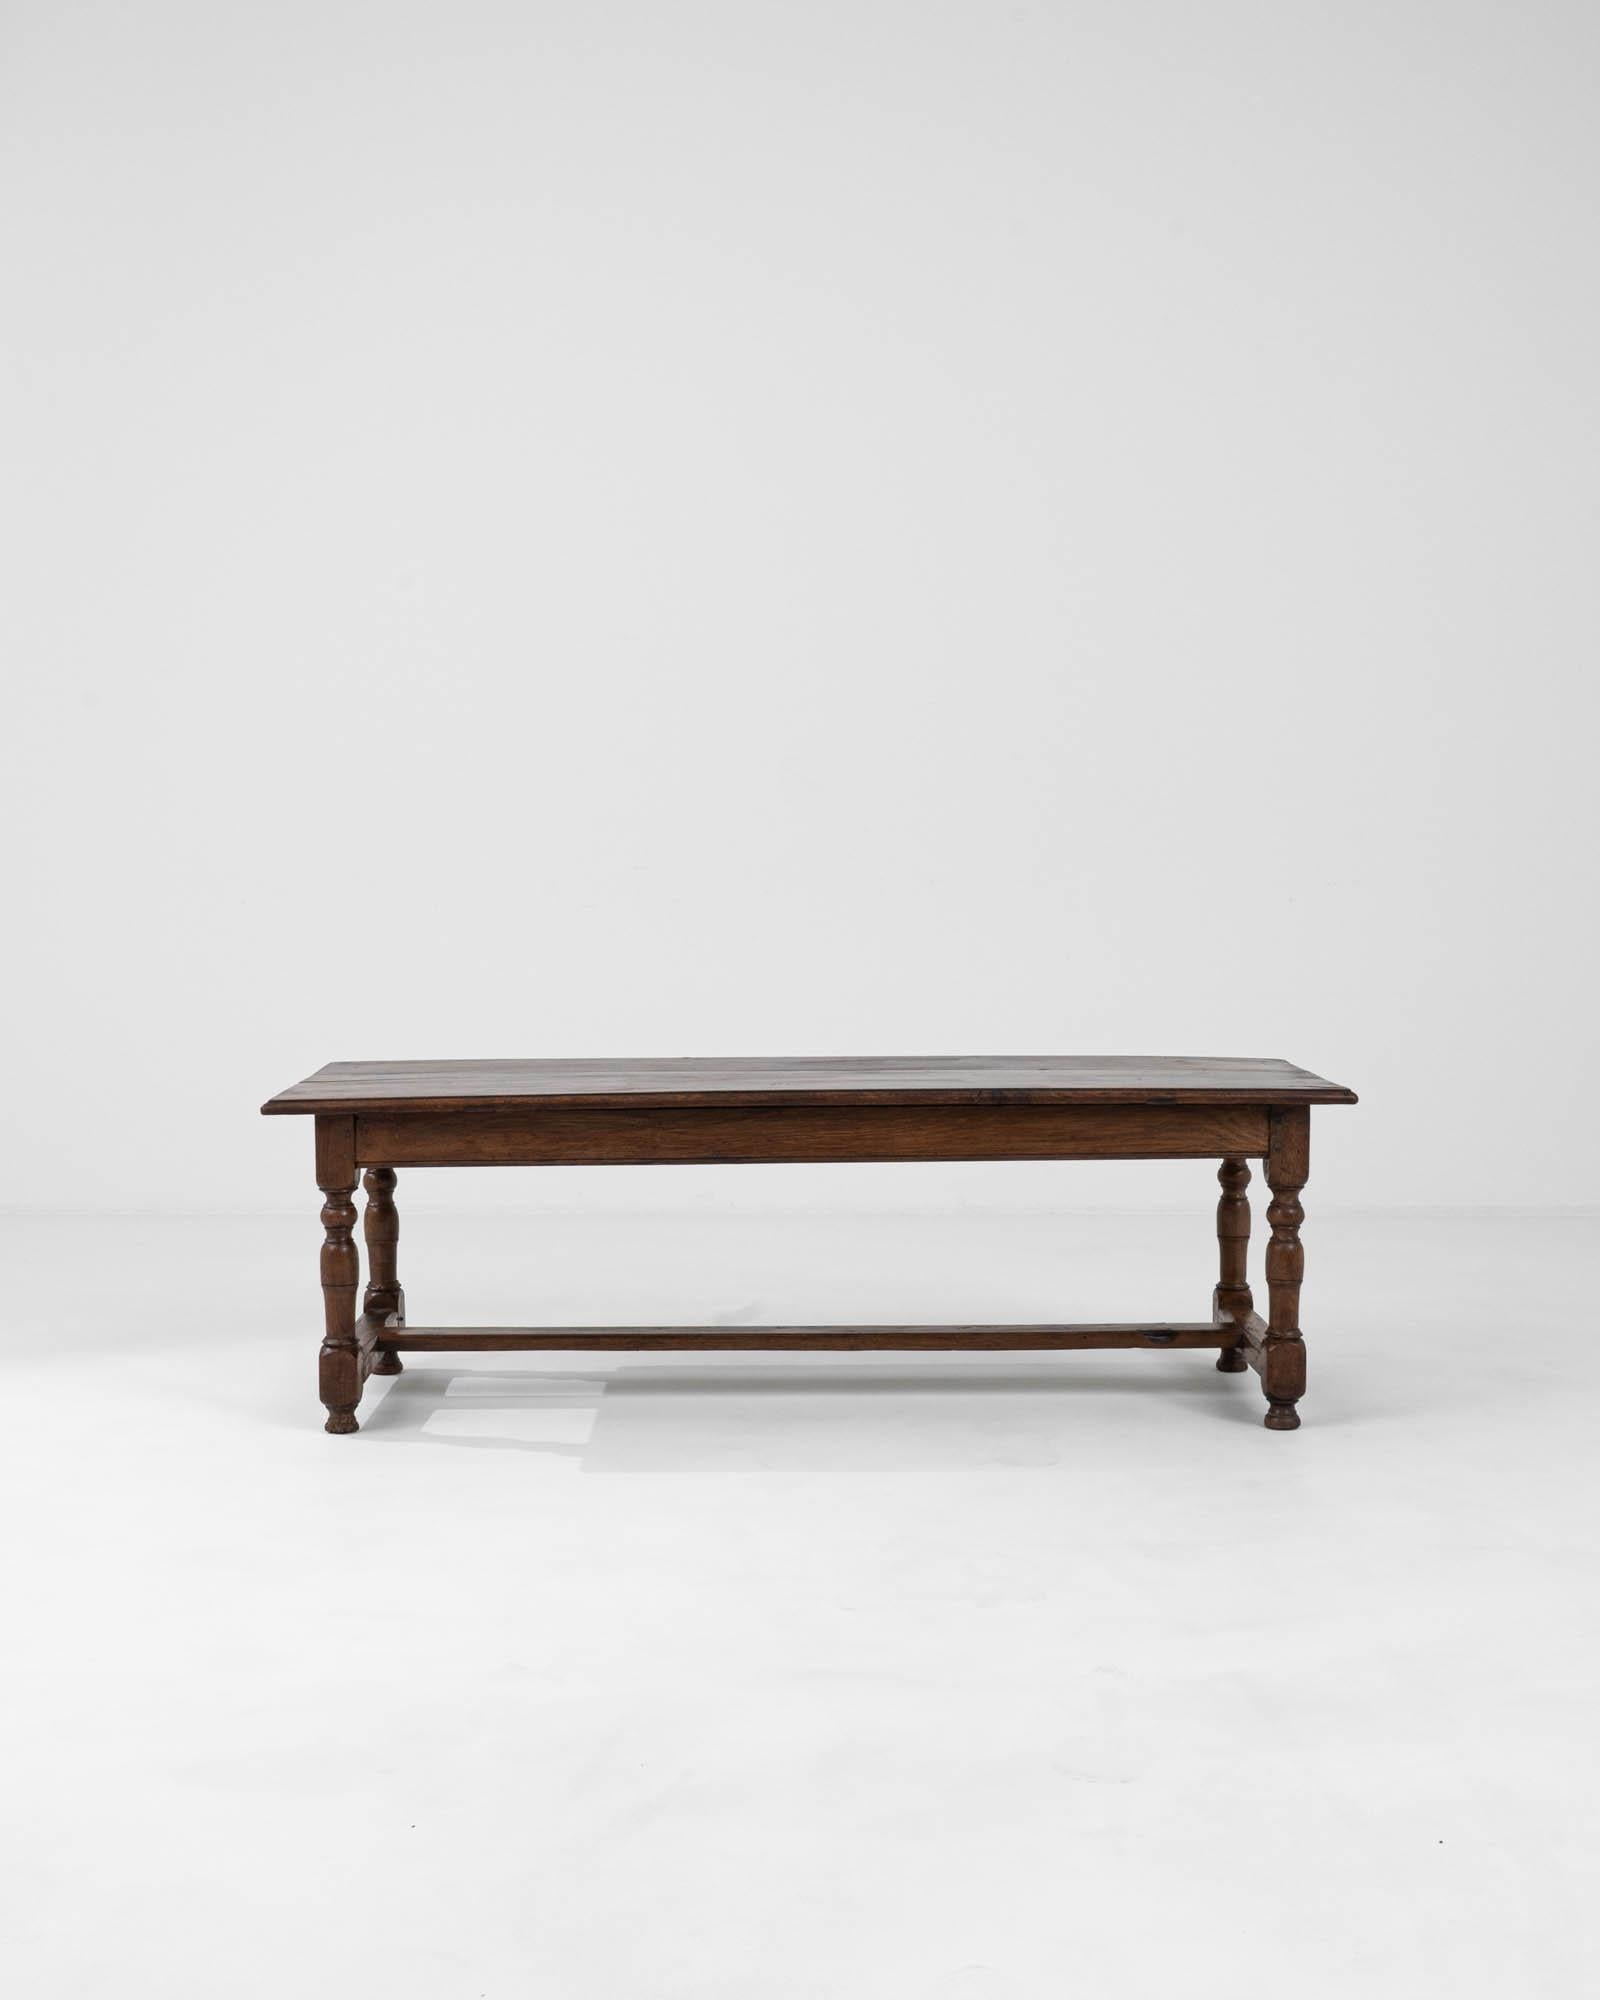 Découvrez l'élégance intemporelle de la table basse en bois française du XVIIIe siècle, un véritable artefact qui fait entrer le charme de l'antiquité dans votre espace de vie. Cette pièce exquise présente la patine d'origine tant convoitée, qui